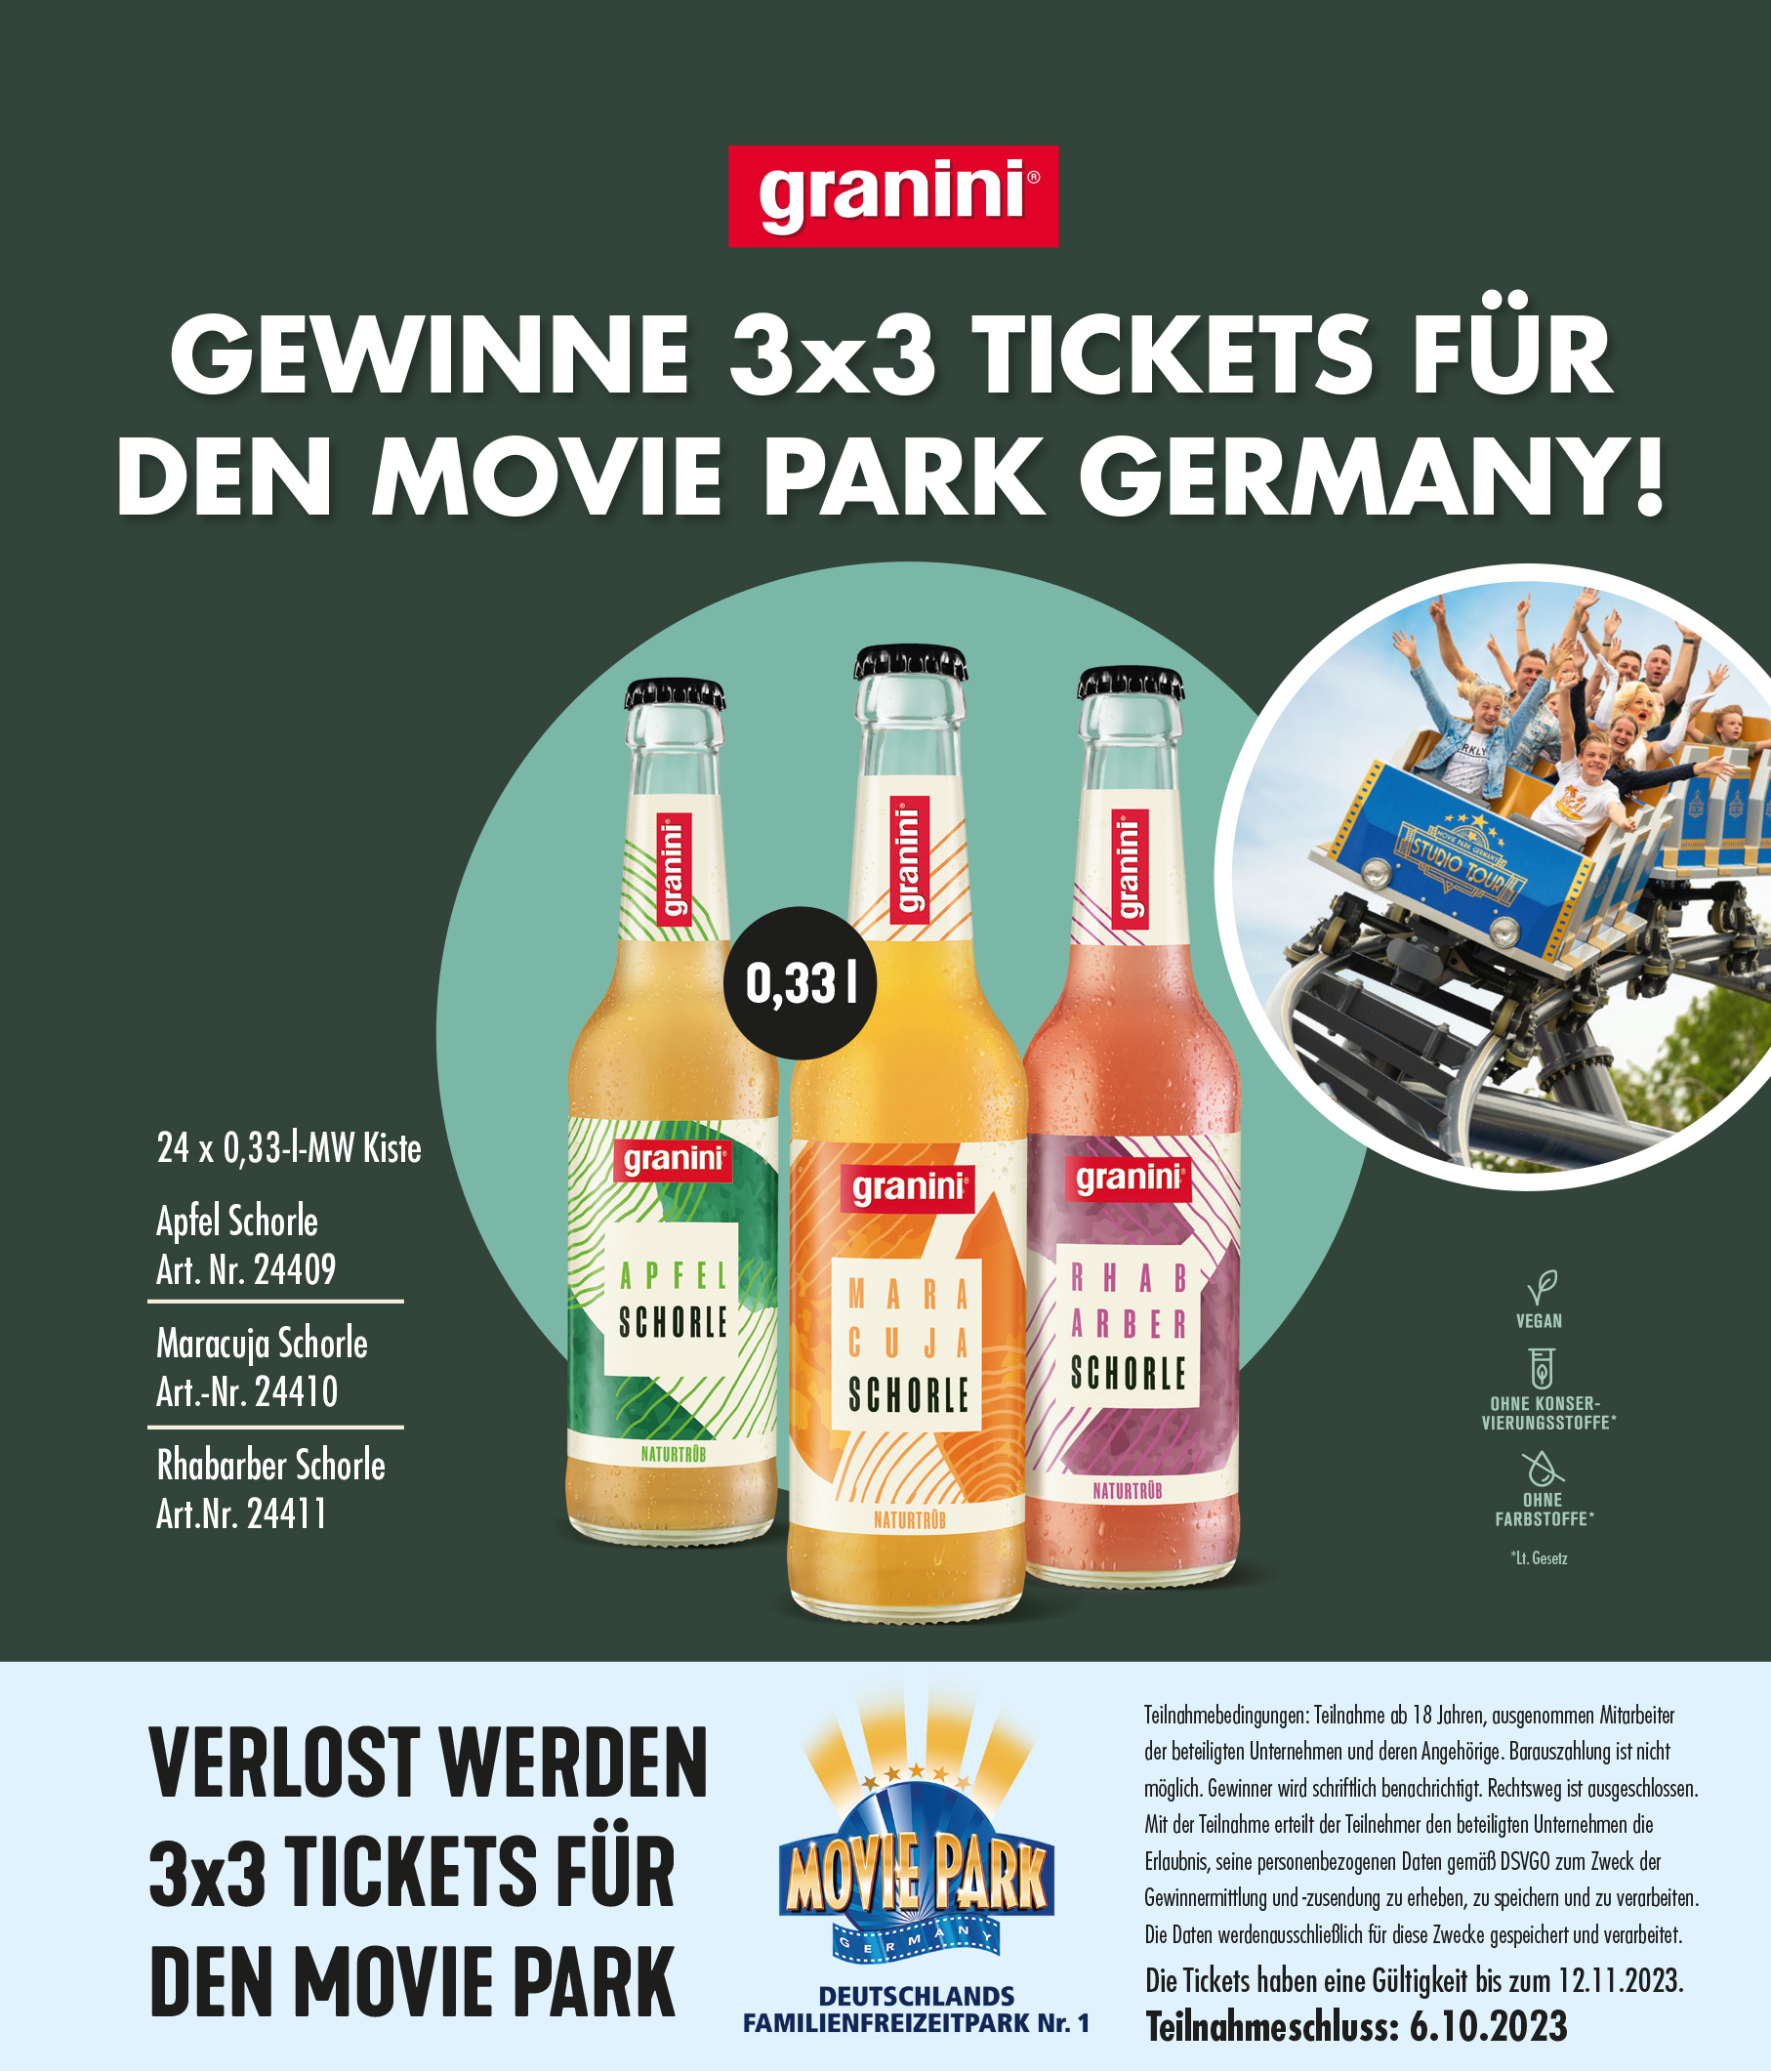 1 Kiste 24 x 0,33l Granini bestellen und mit etwas Glück 3x3 Tickets für den Moviepark gewinnen!